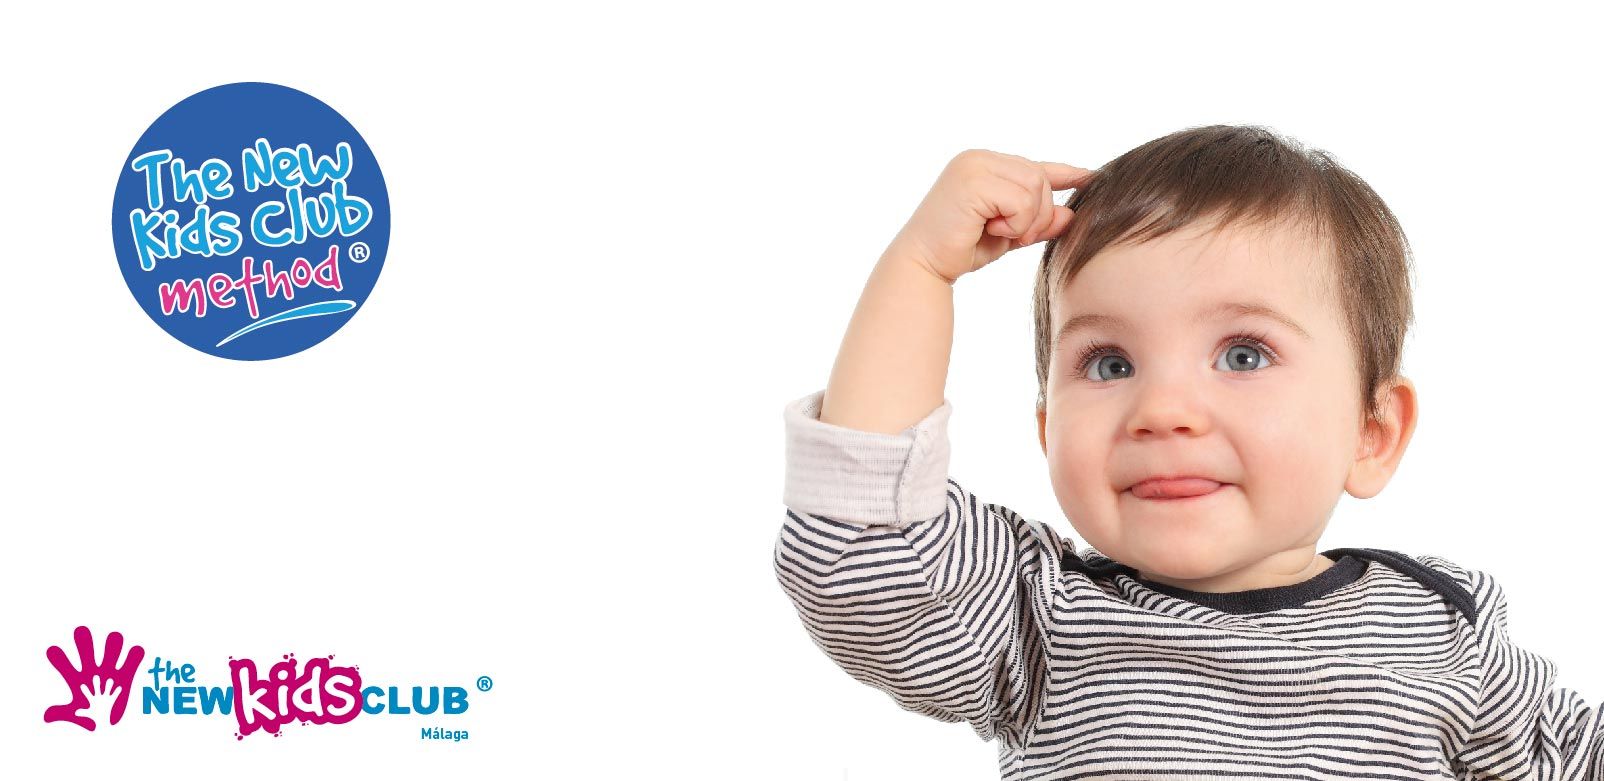 Clases demostrativas de inglés gratuitas para bebés en The New Kids Club Málaga